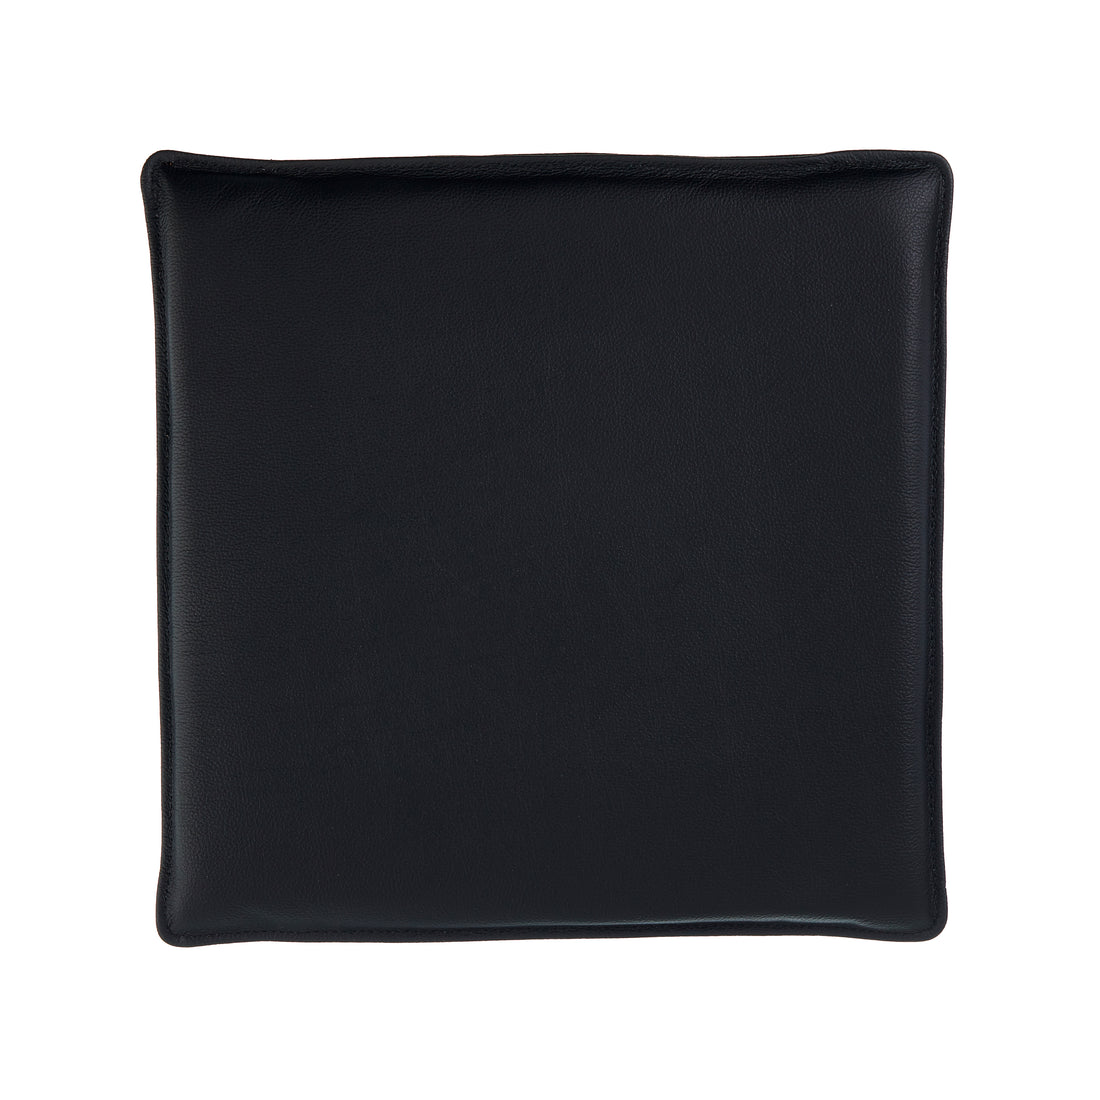 Almofada Universal 40x40 cm em couro preto sem botões